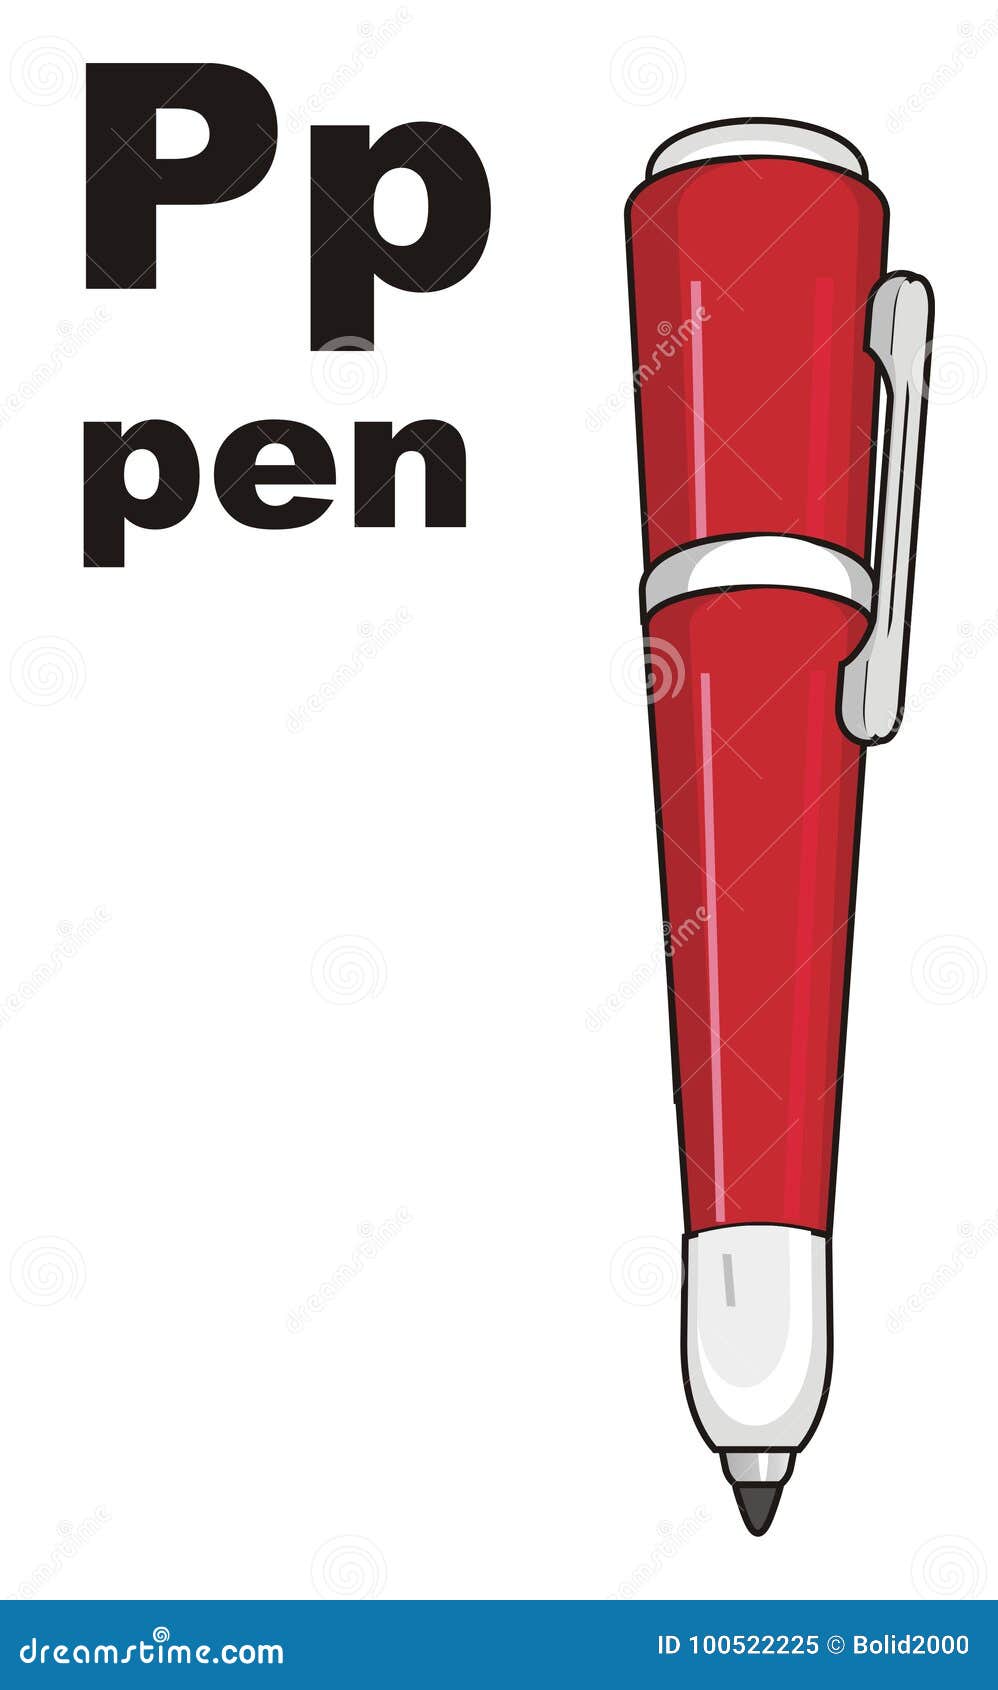 Pen по английски. Ручка на английском языке. Pen карточка. Pen на английском. Pen английский для детей.